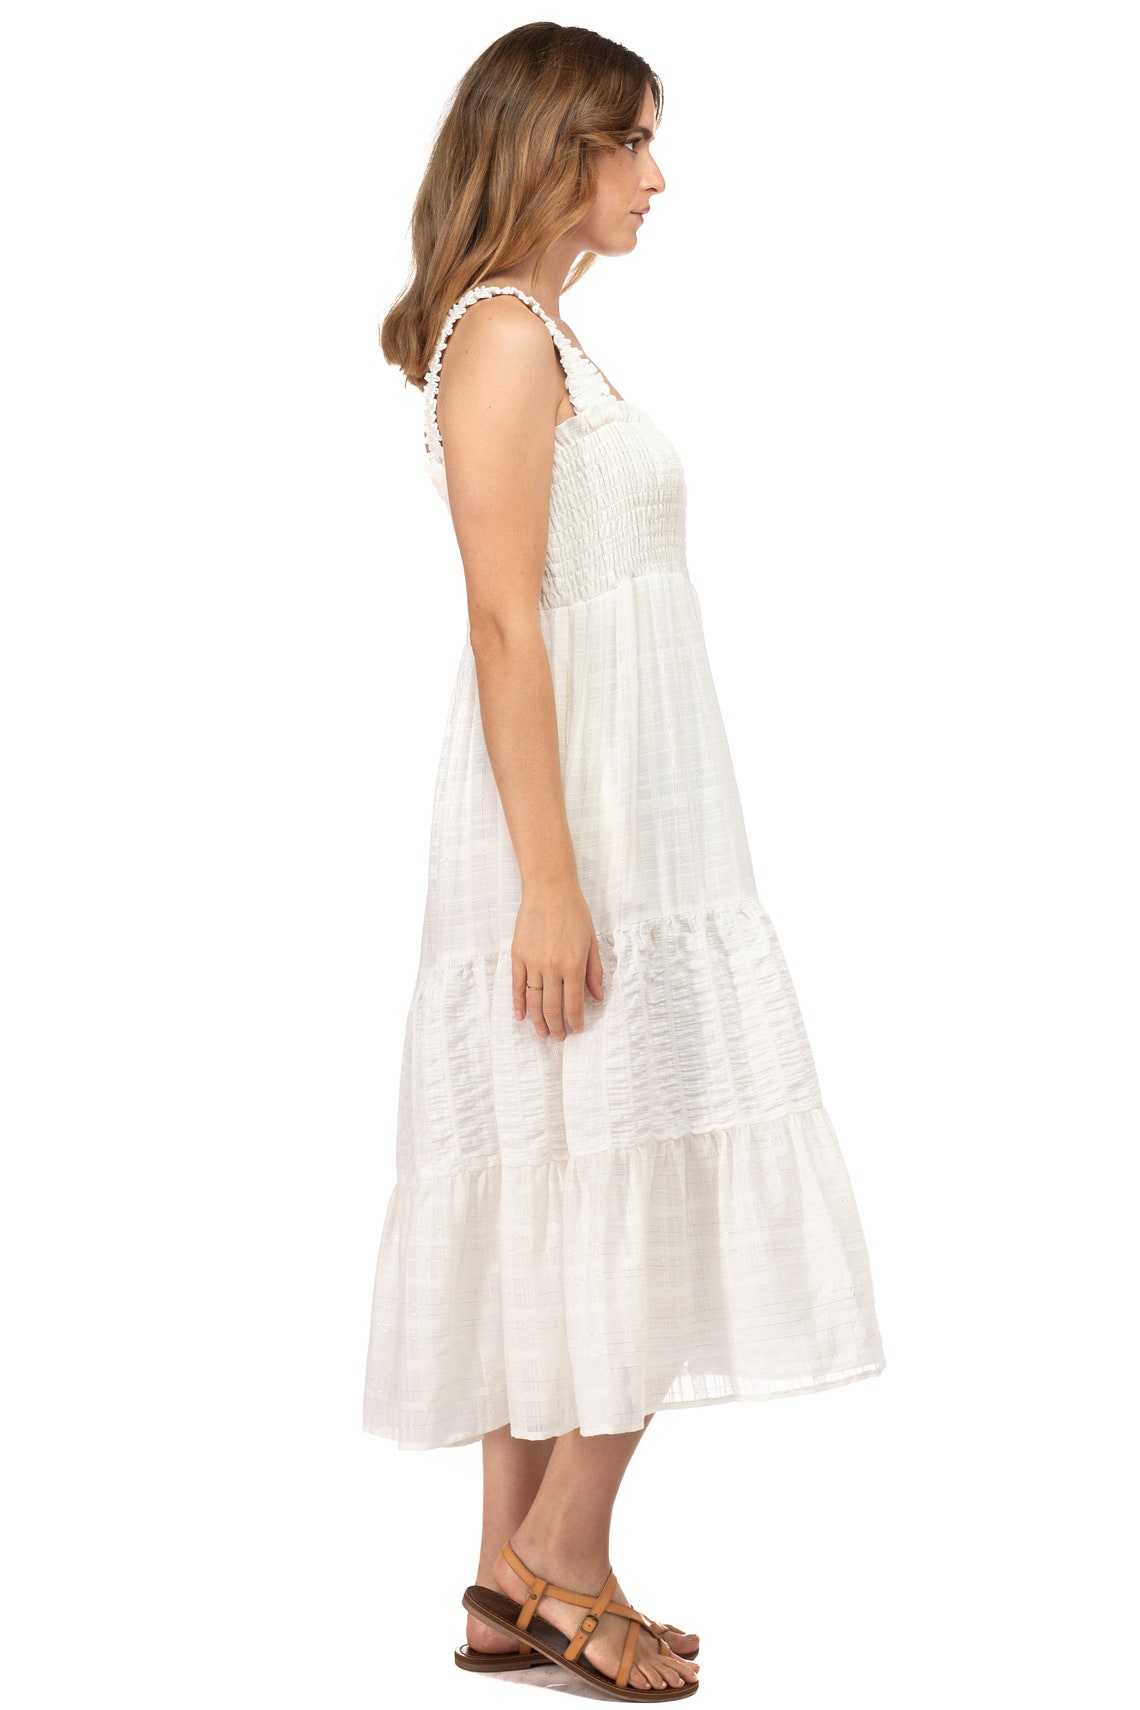 White Sleeveless Summer Dress - Etsy